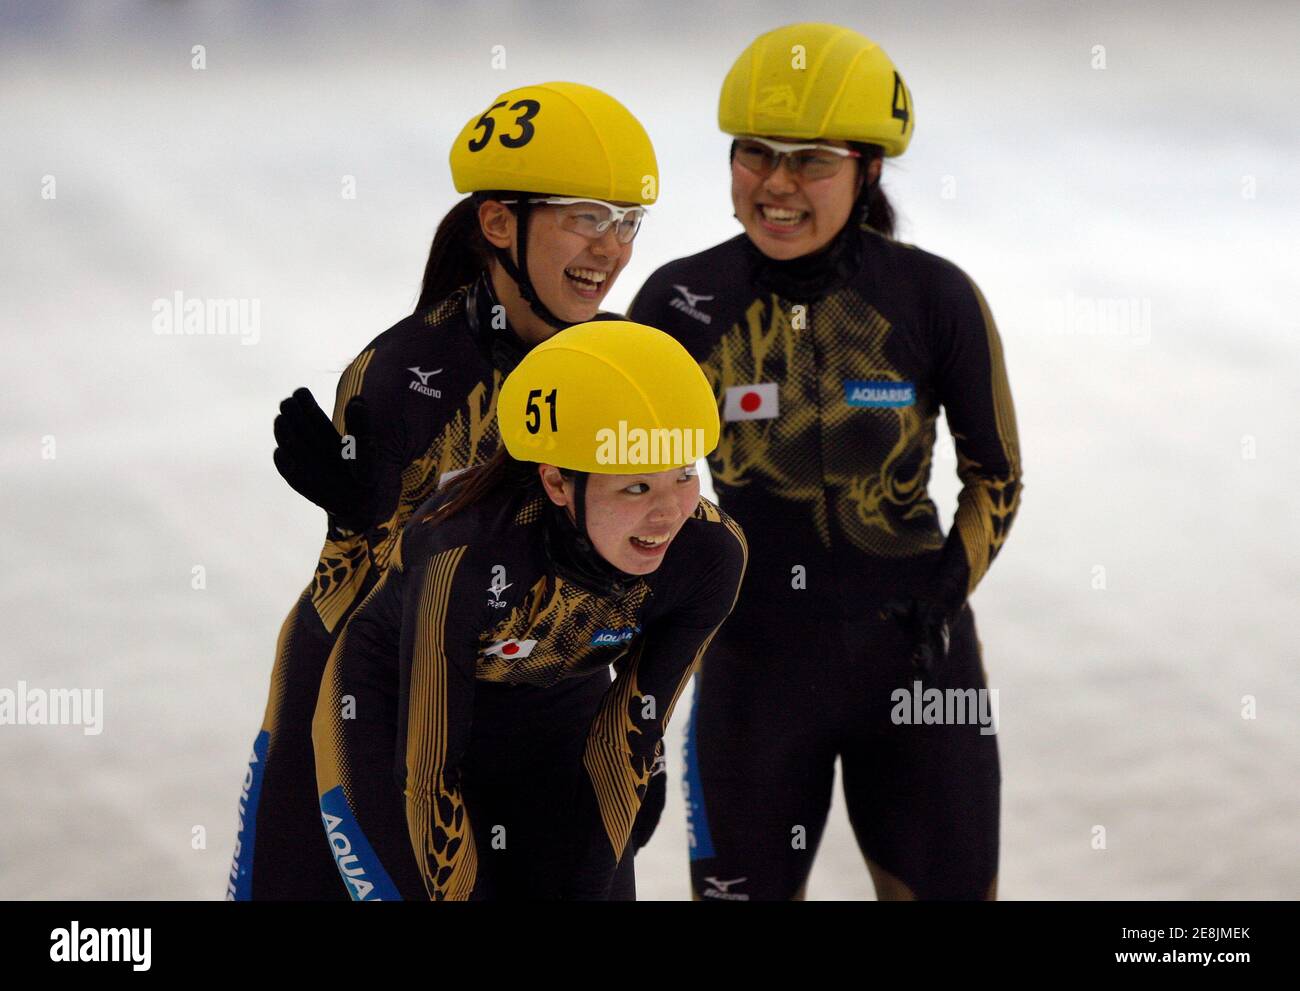 Hiroko Sadakane (53), Ayuko Ito (51) und Biba Sakurai Japan feiern ihre Silbermedaille nach der Frauen 3000 Meter Finale Staffellauf bei den ISU World Cup Shorttrack-Eisschnelllauf-Wettbewerben in Seoul 27. September 2009.  REUTERS/Jo Yong-Hak (Südkorea Sportart EISSCHNELLLAUF) Stockfoto